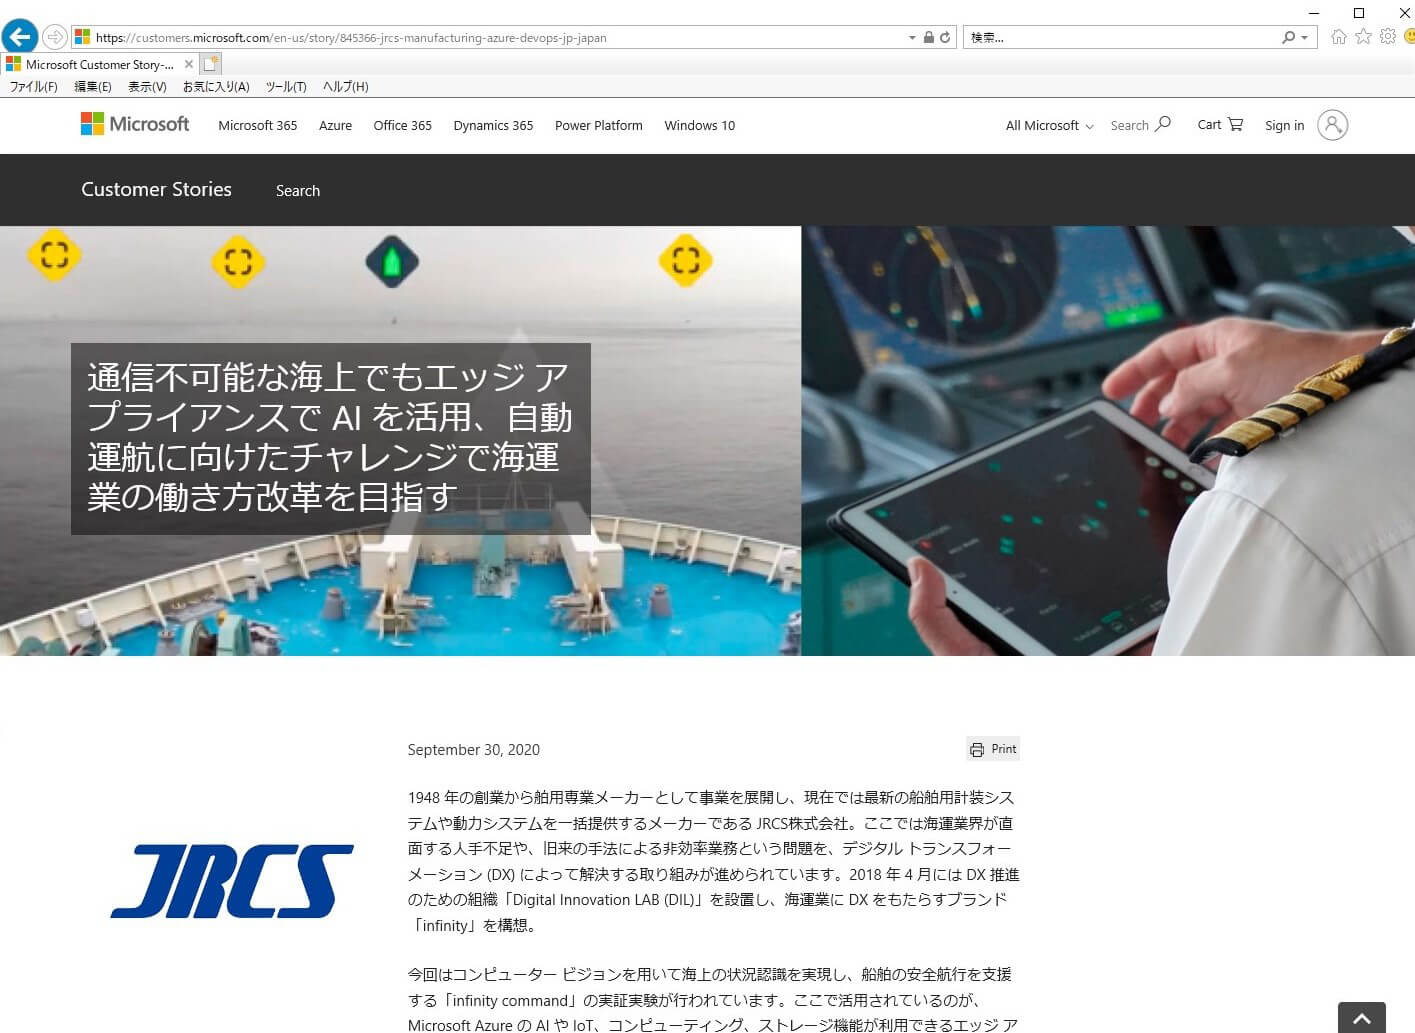 マイクロソフト社のホームページにJRCSの取り組みが紹介されています